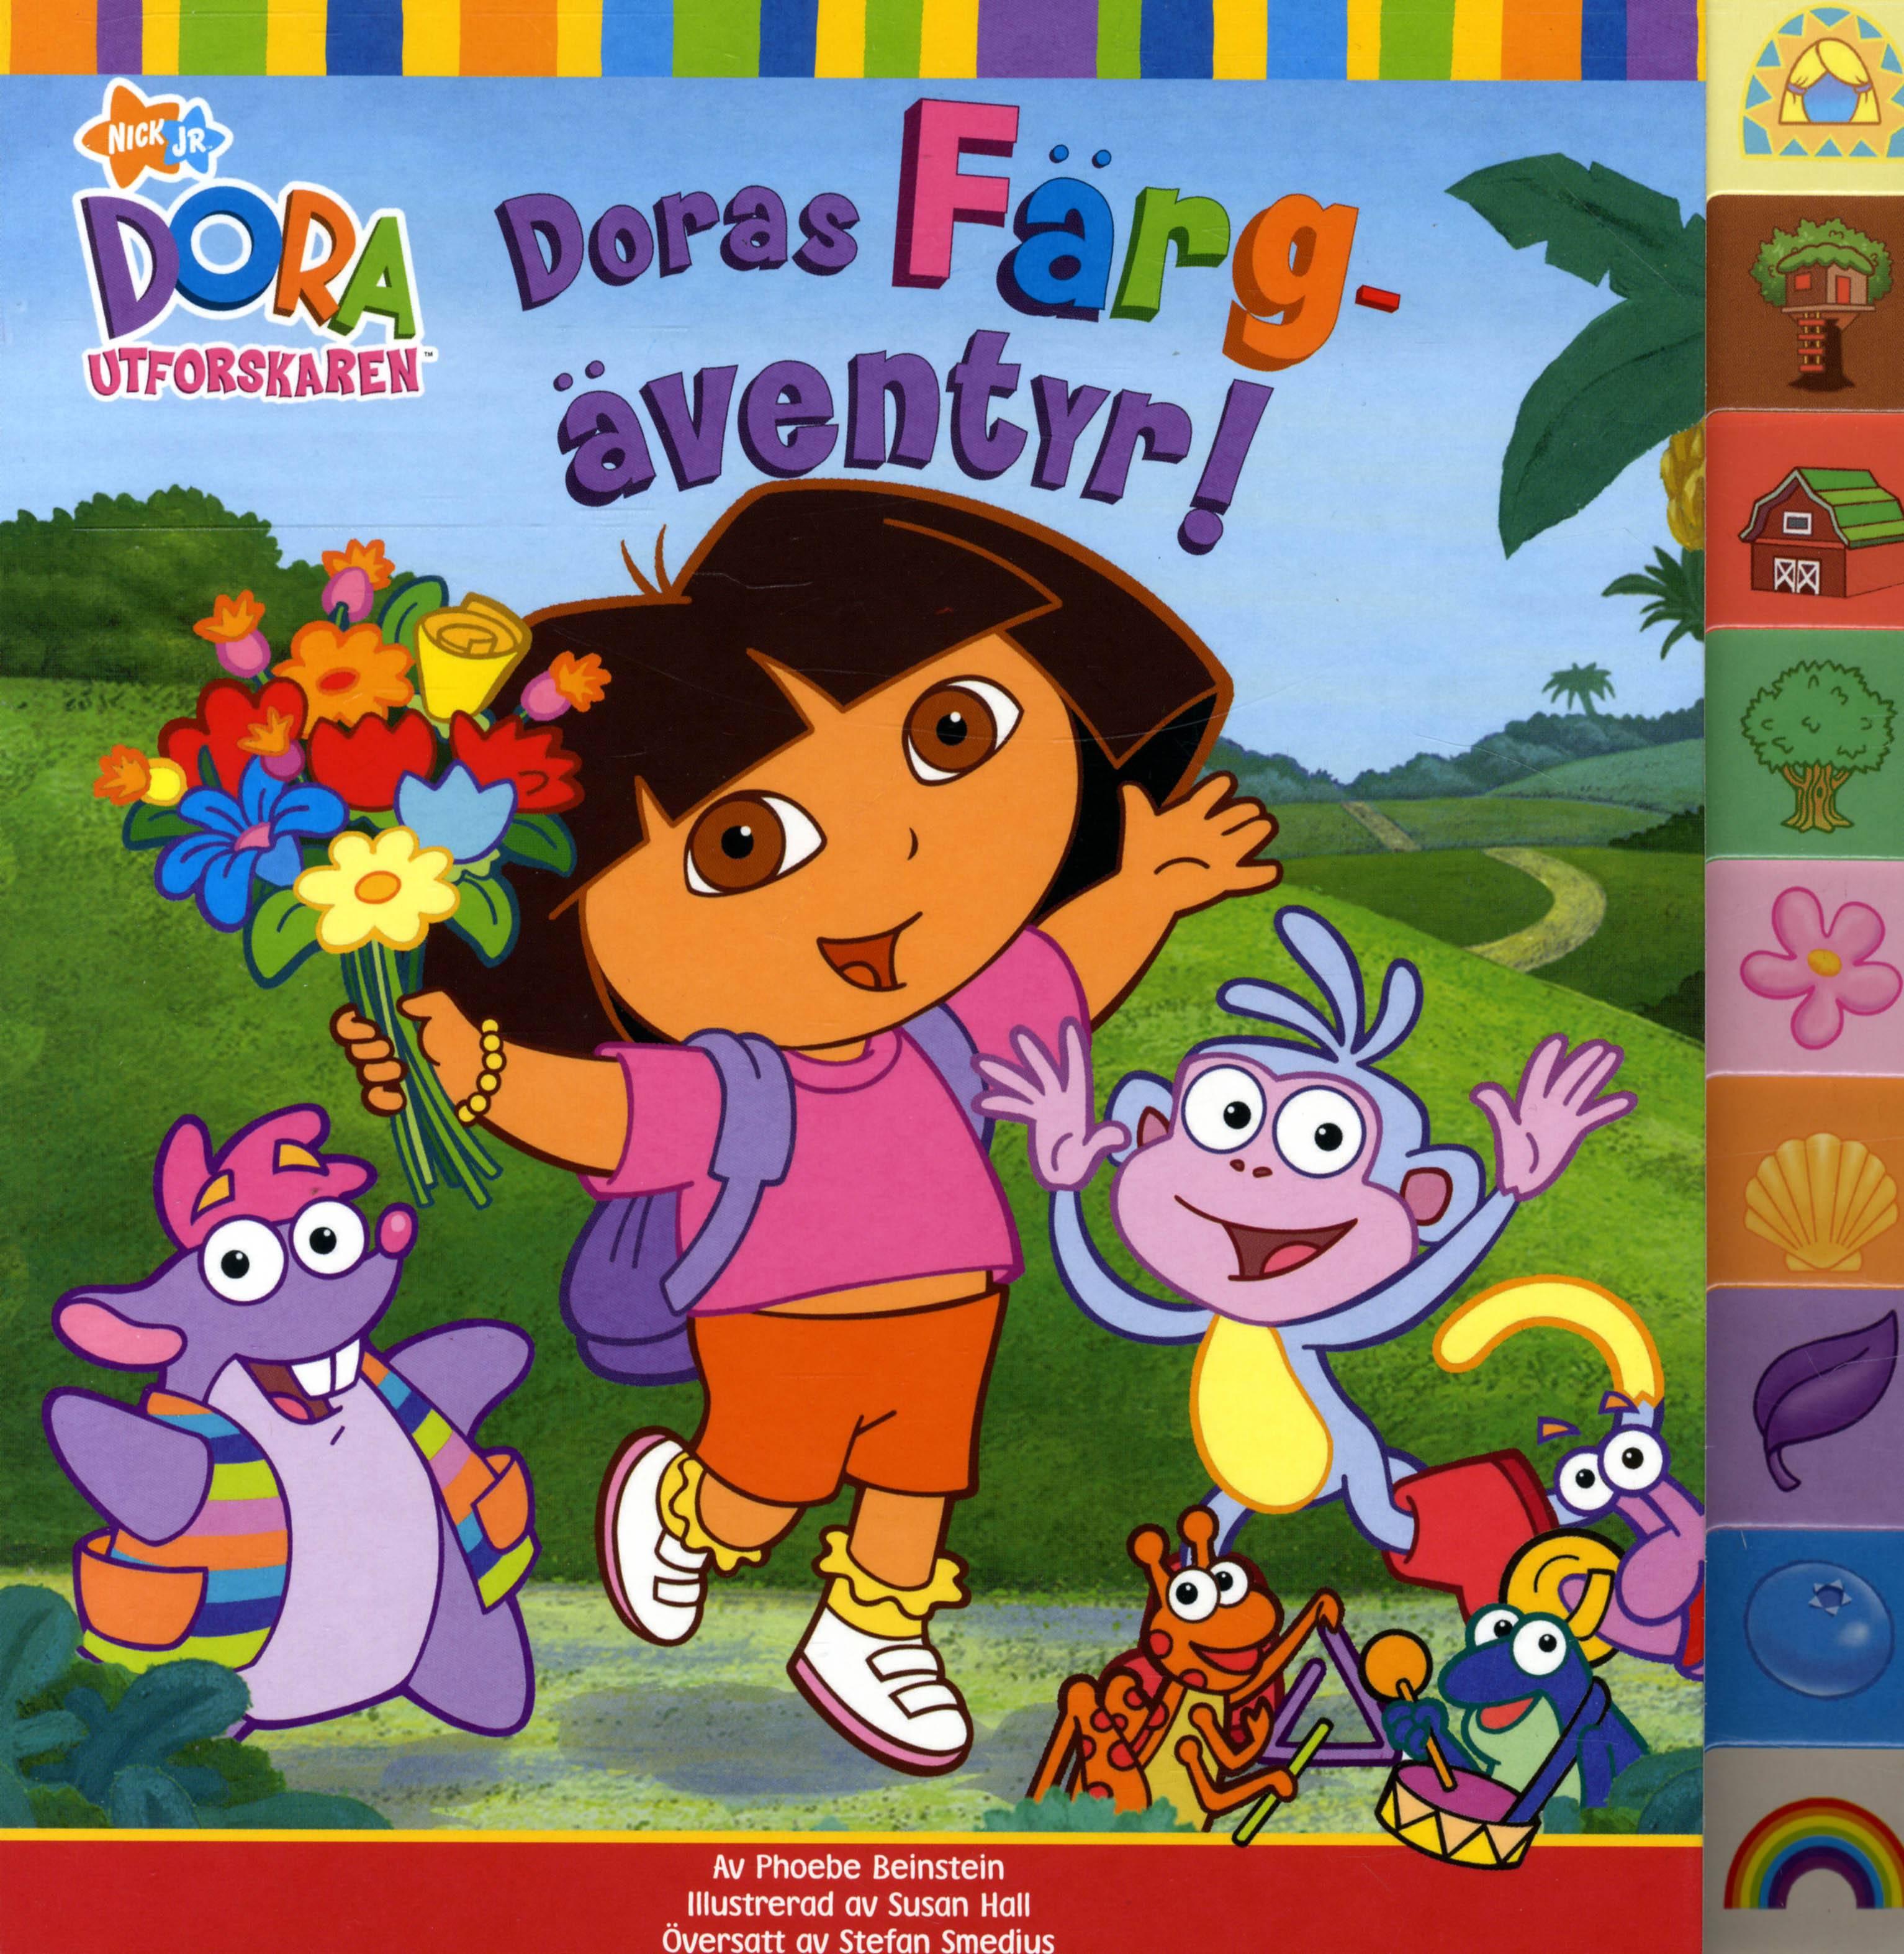 Dora utforskaren - Doras färgäventyr